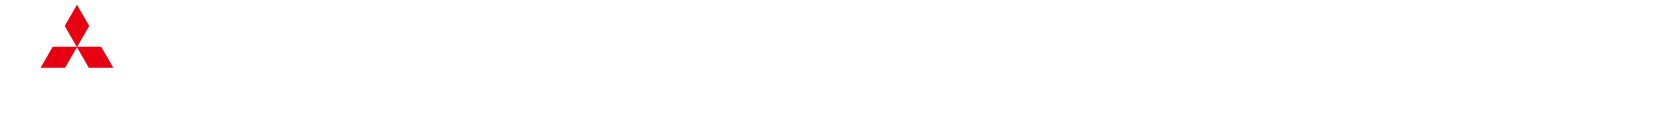 駿遠三菱自動車販売株式会社 | デリカD:5